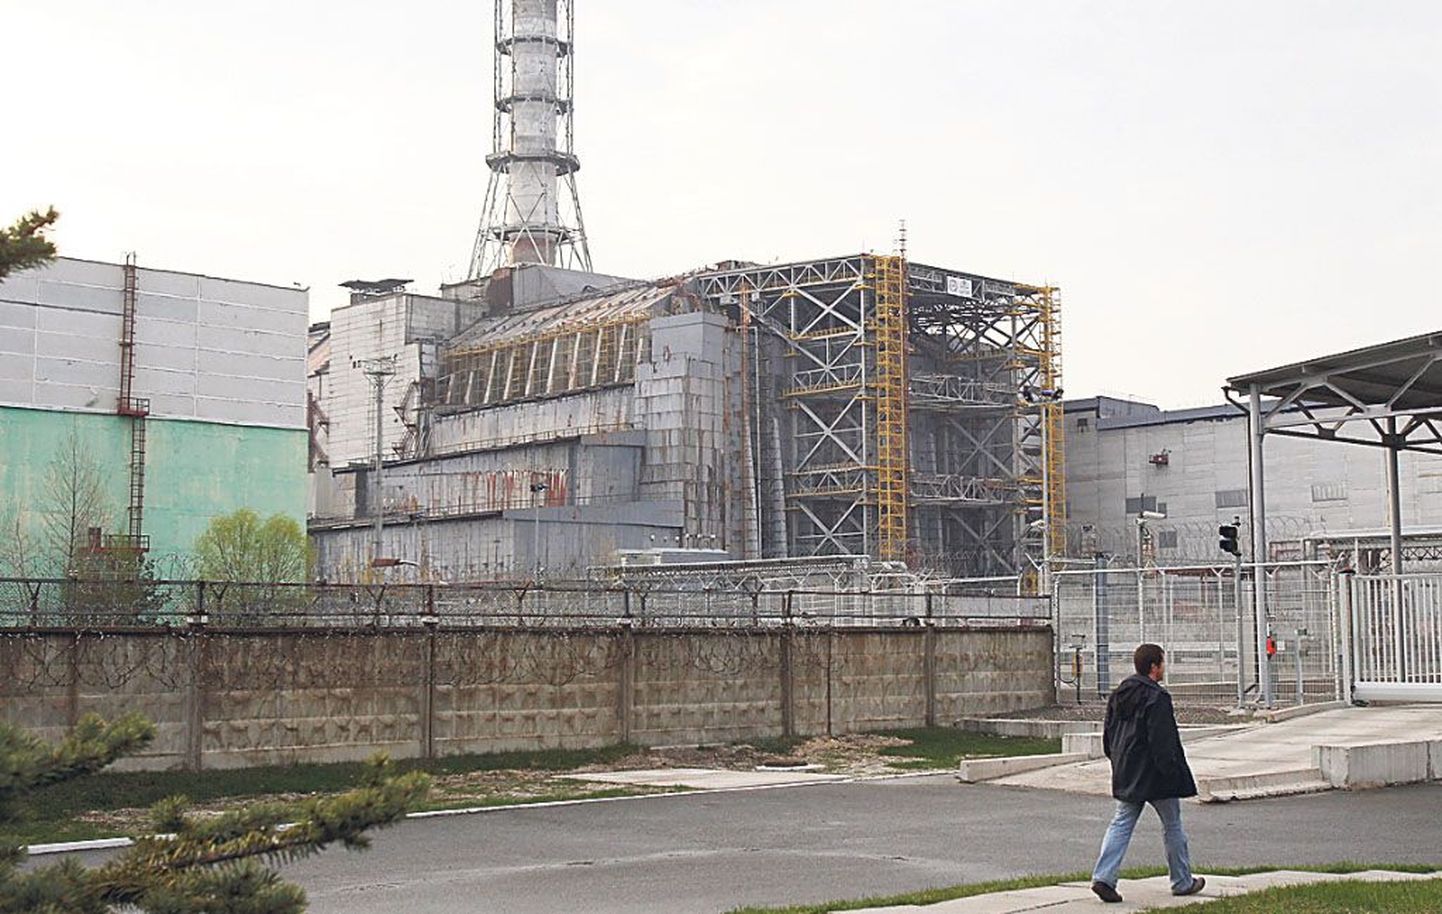 28 aastat tagasi kärgatas pauk Tšernobõli aatomielektrijaamas. Praegu Ida-Ukrainas käivast sõjategevusest kõigest 200 kilomeetri kaugusel on teine tuumajaam.